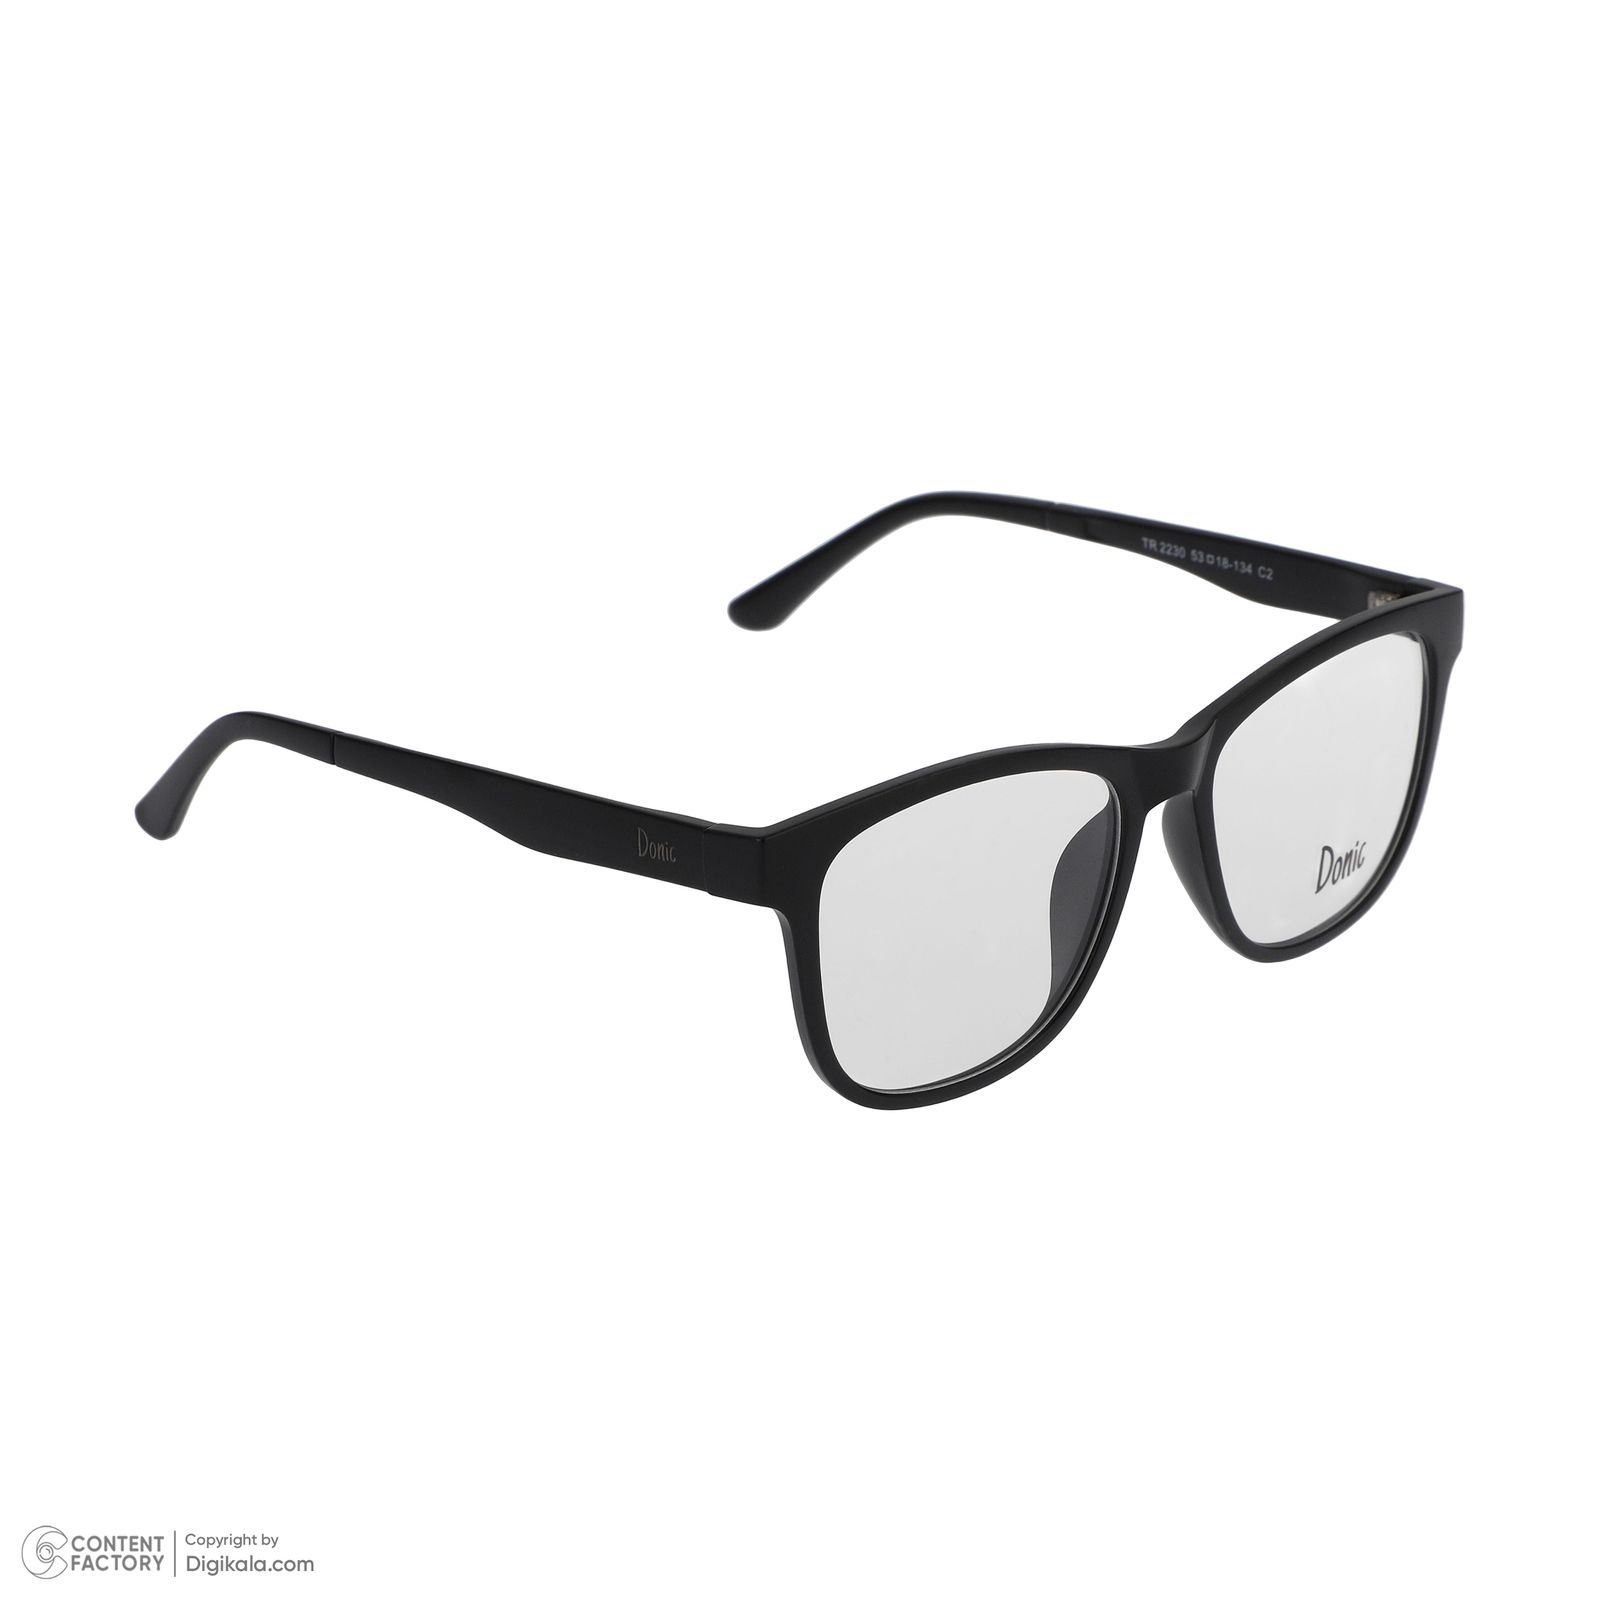 فریم عینک طبی دونیک مدل tr2230-c2 به همراه کاور آفتابی مجموعه 5 عددی -  - 4